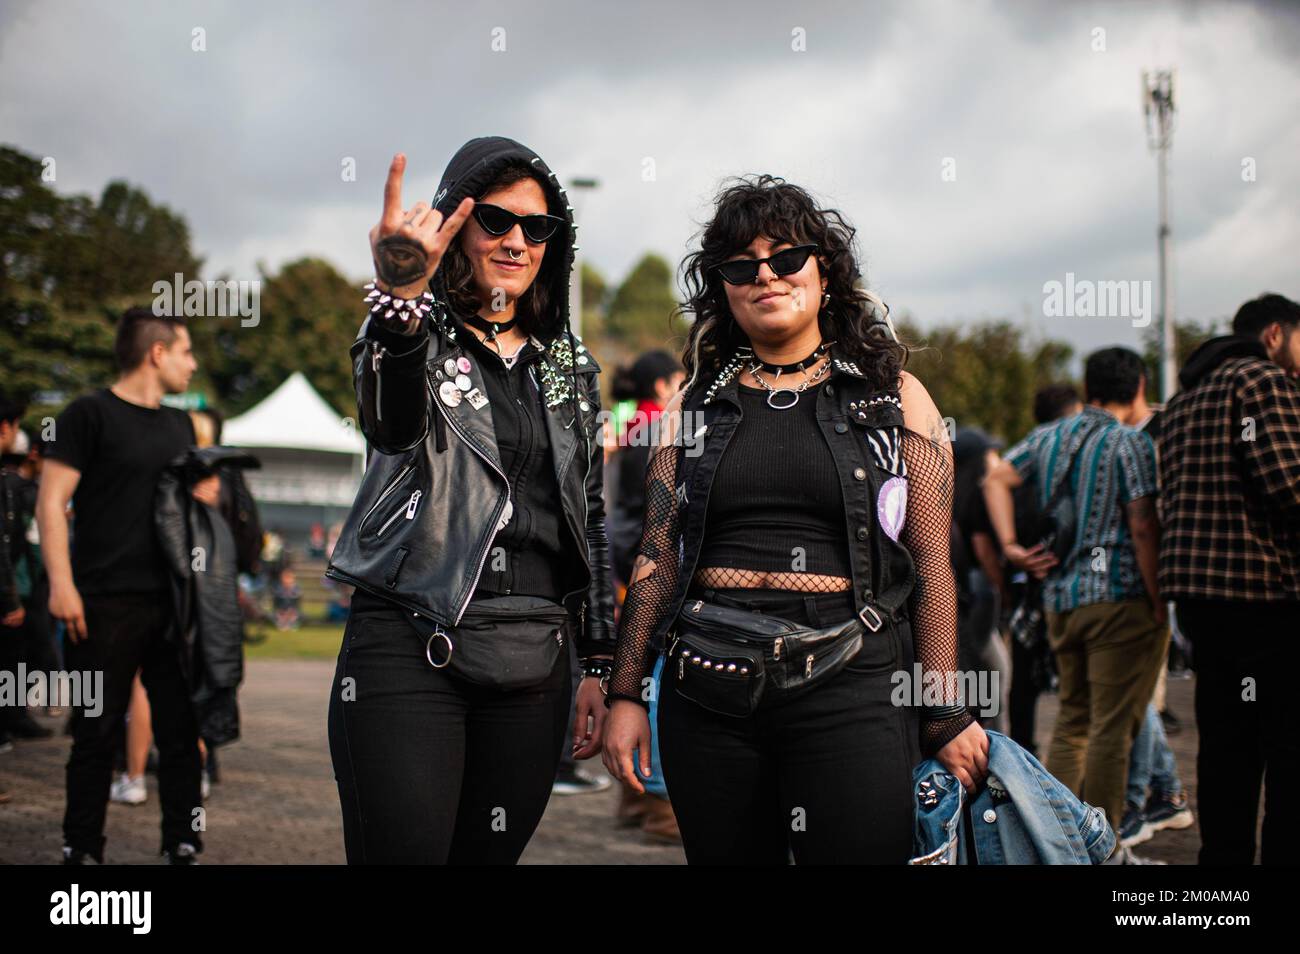 Am dritten Tag nach dem Comeback des Musikfestivals „Rock al Parque“, dem größten Rockfestival lateinamerikas, posieren Konzertbesucher für ein Porträt Stockfoto